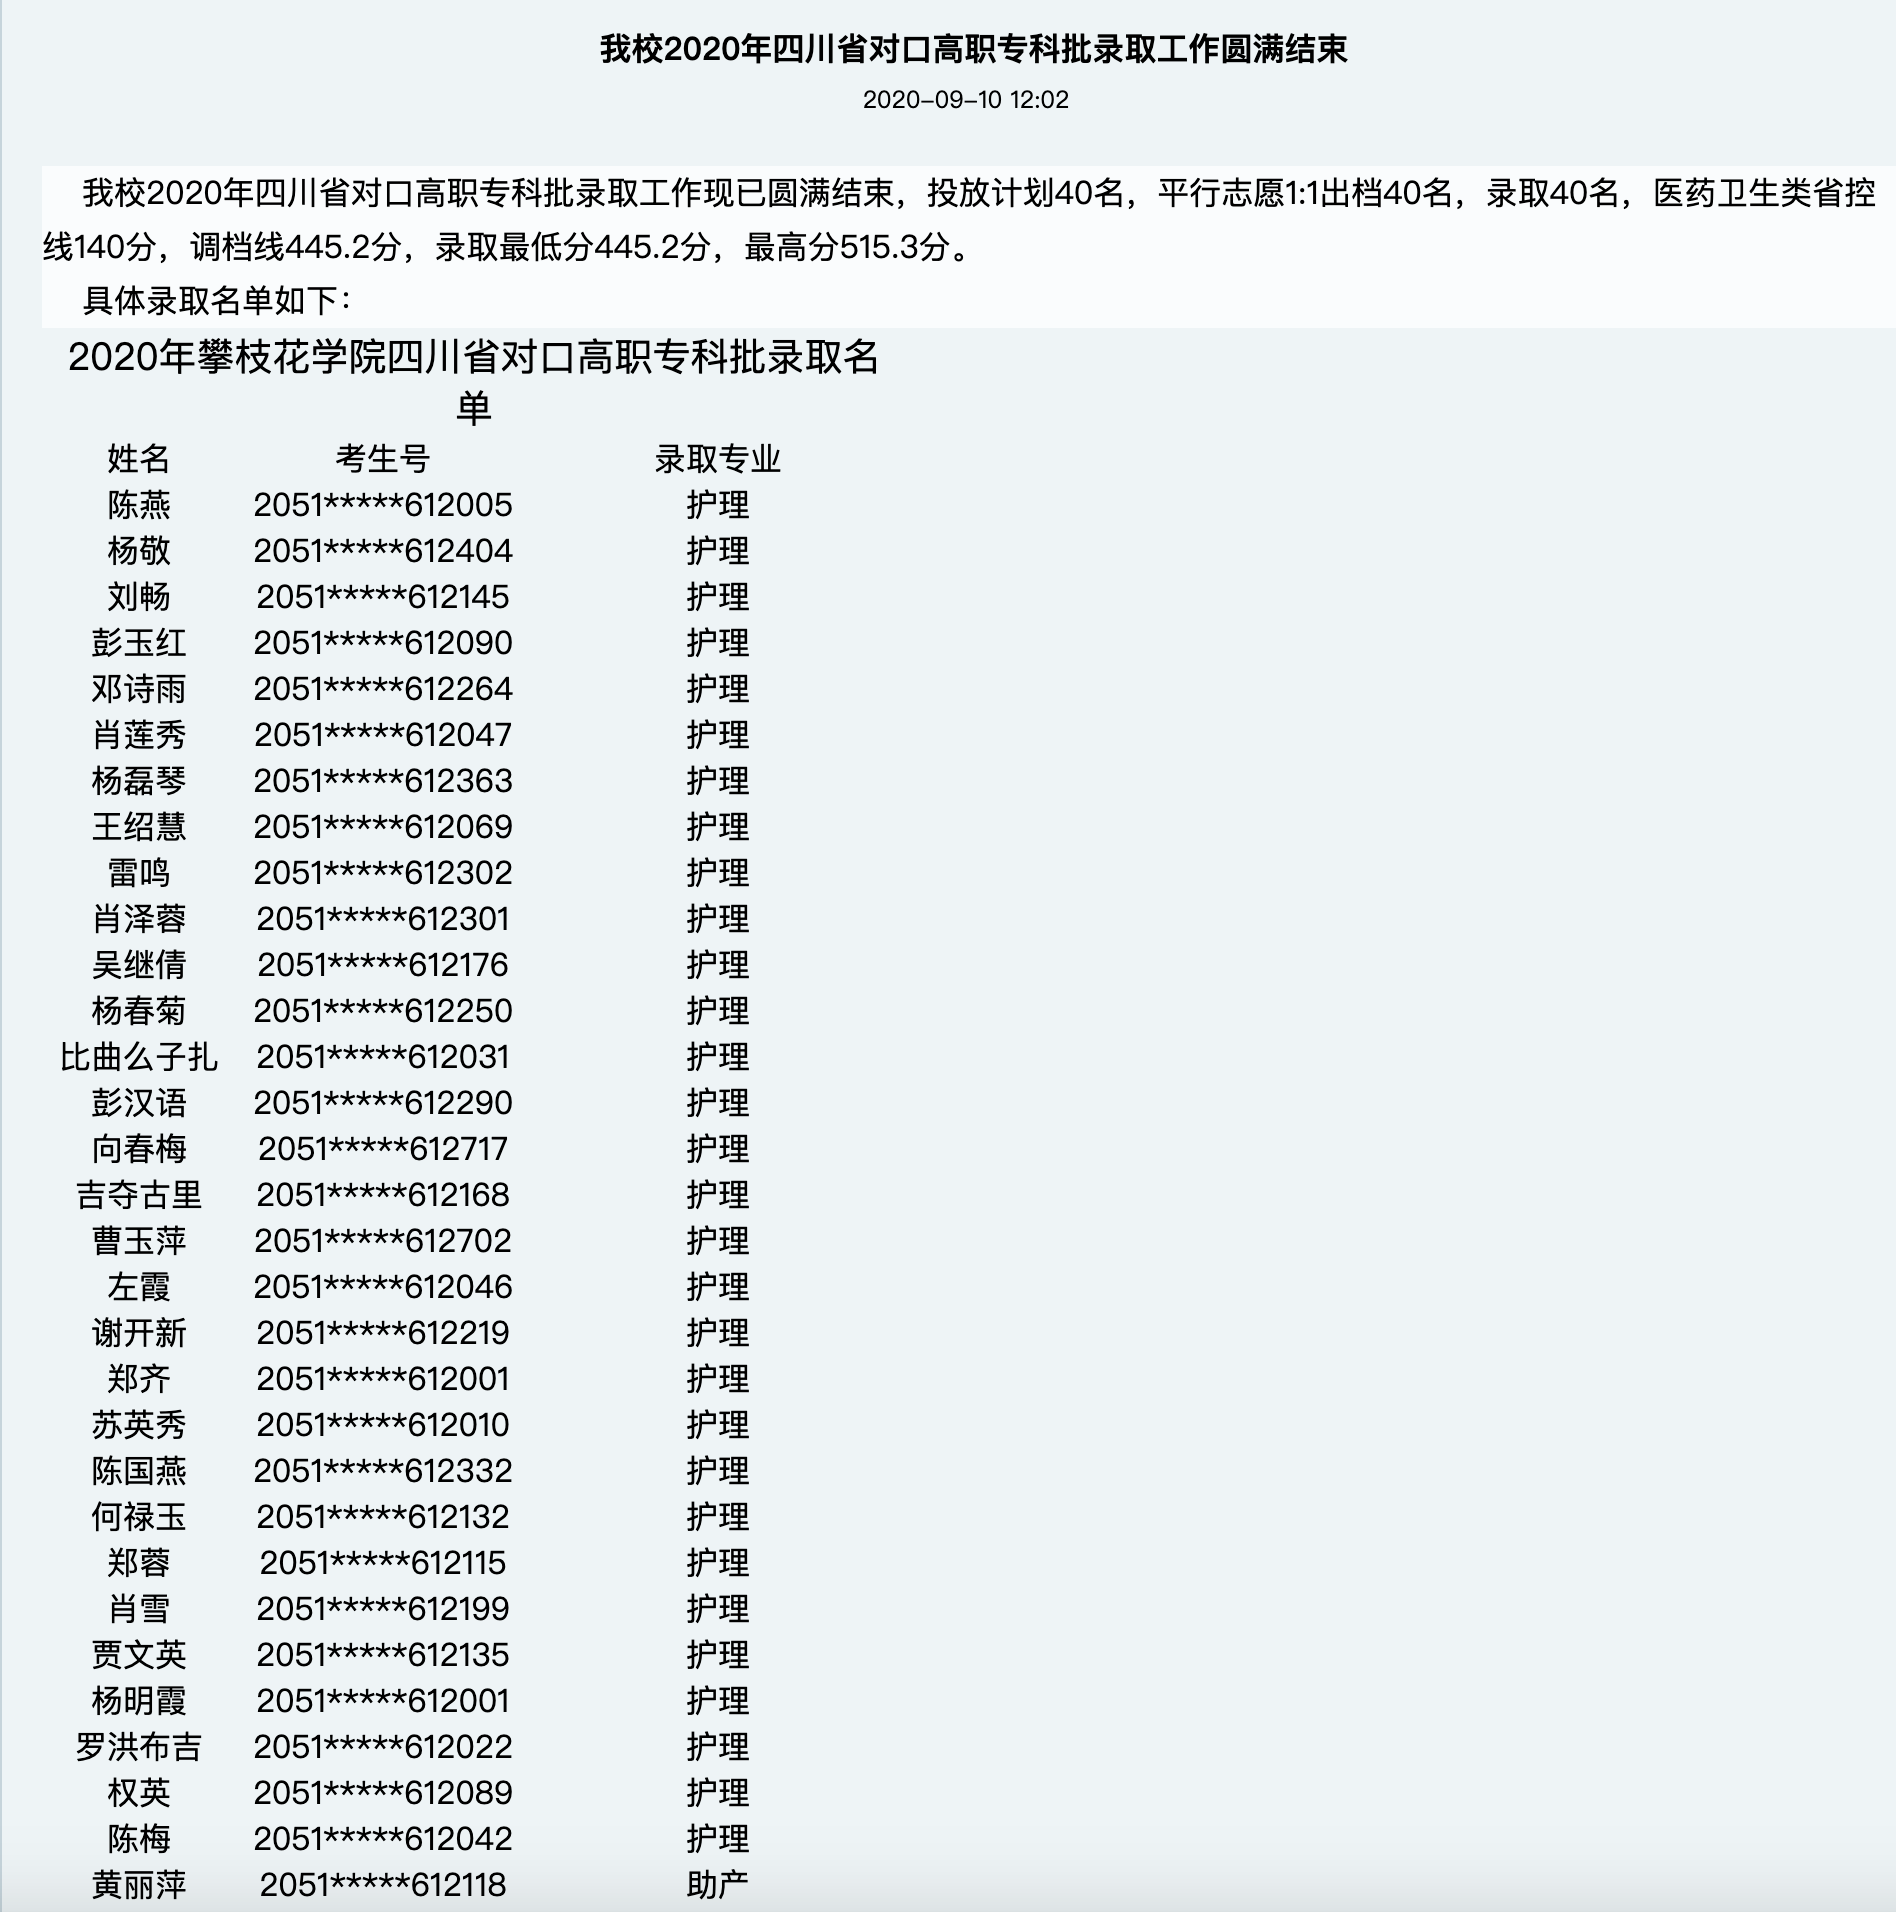 攀枝花学院2020年四川省对口高职专科批录取名单